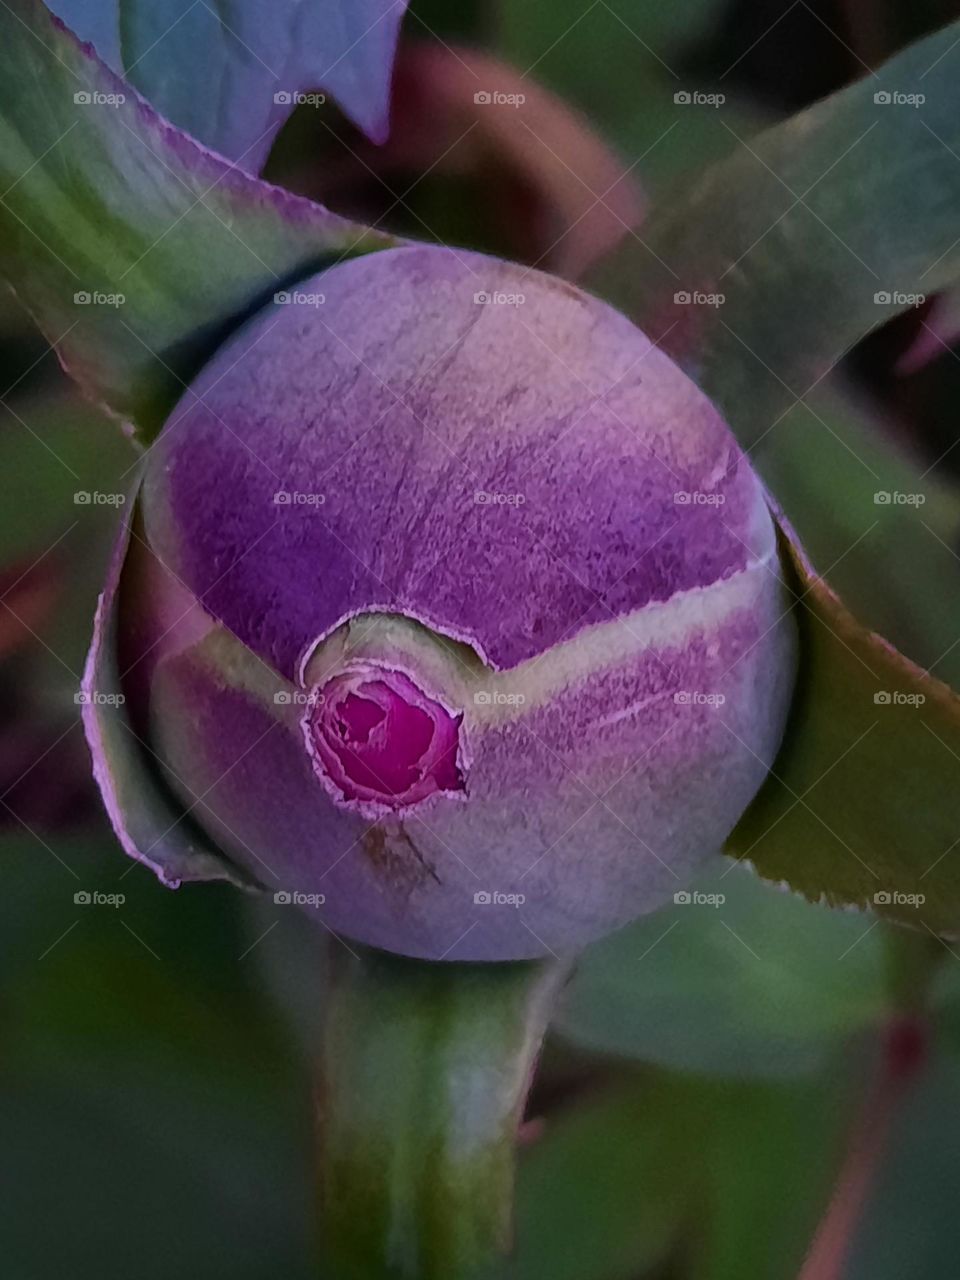 purple flower bud begining to open